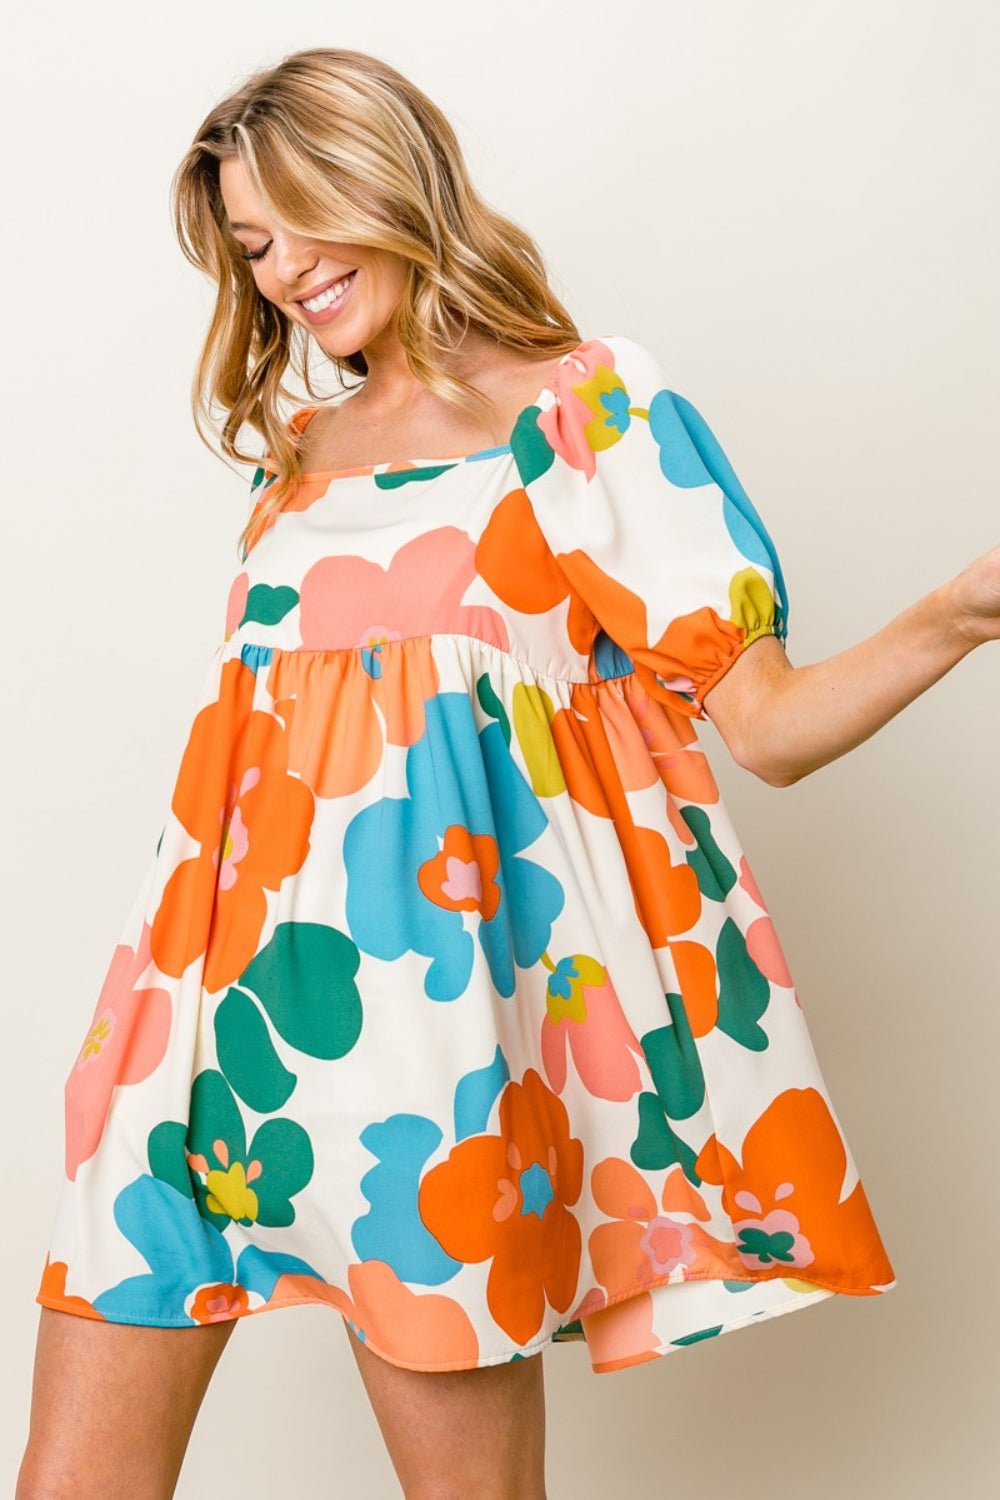 Floral Puff Sleeve Mini Dress in Cream/Orange/BlueMini DressBiBi